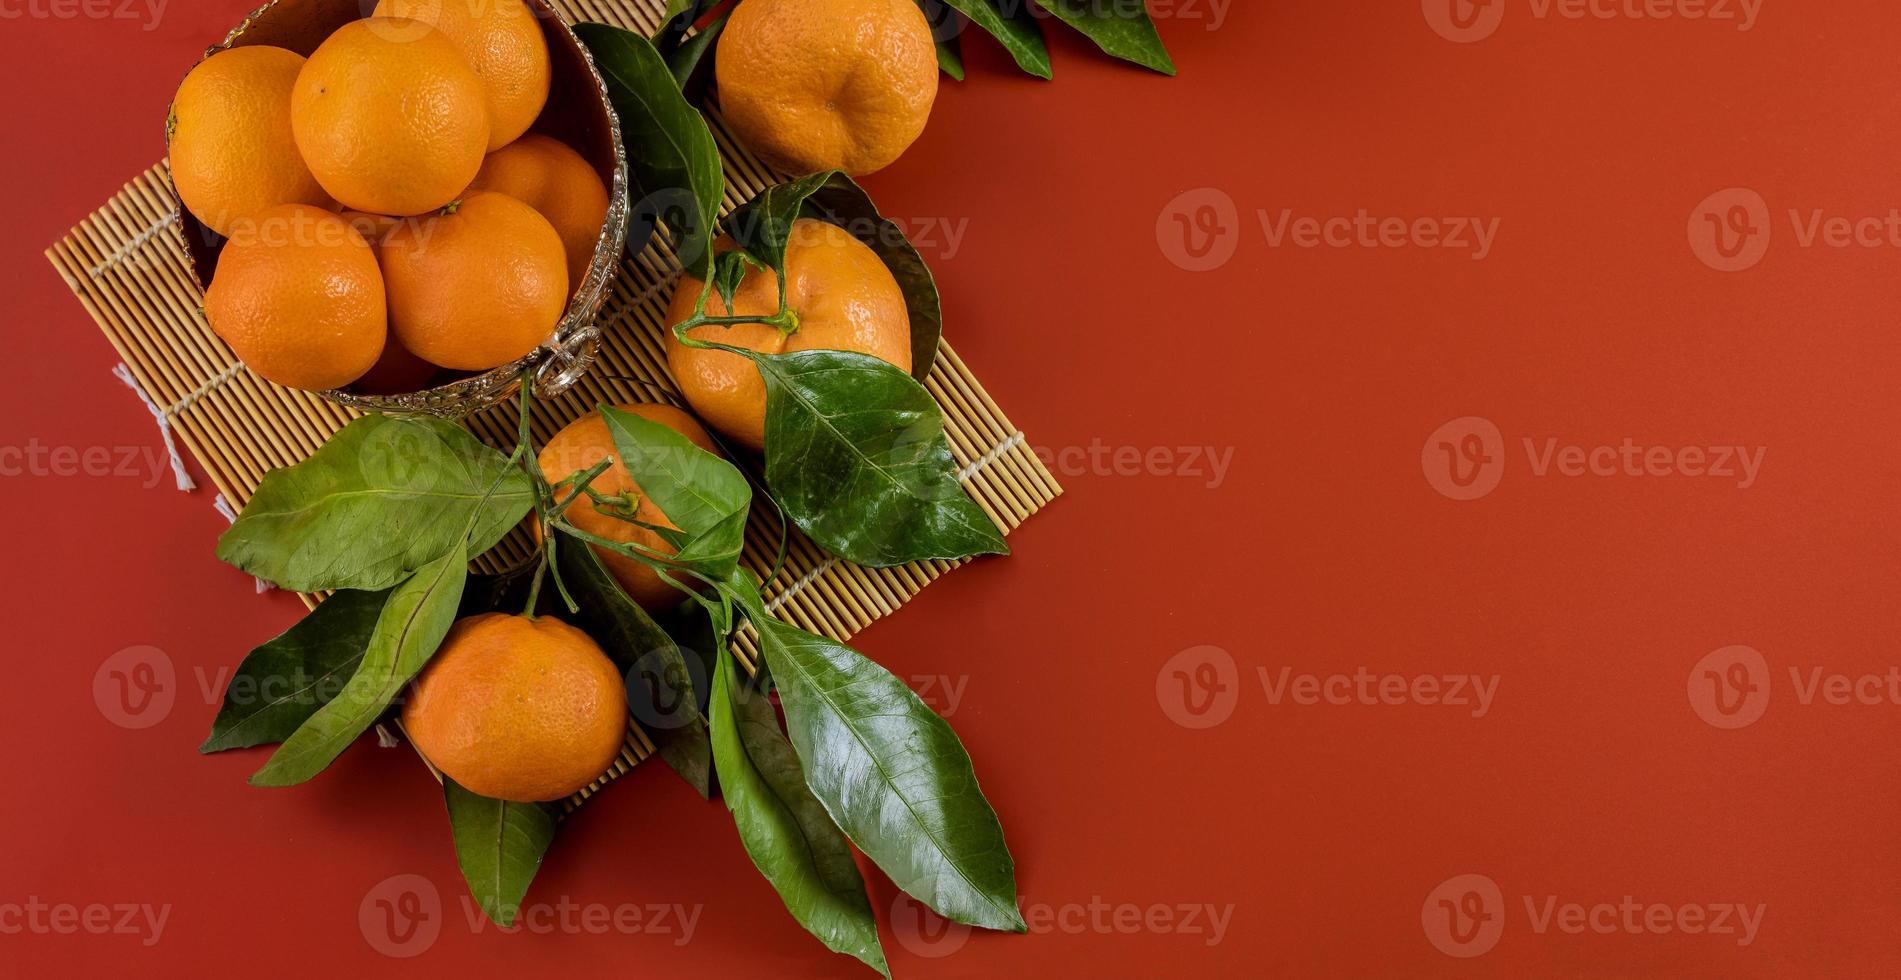 rijpe heldere rauwe mandarijnen op tak met groene bladeren in een kom foto